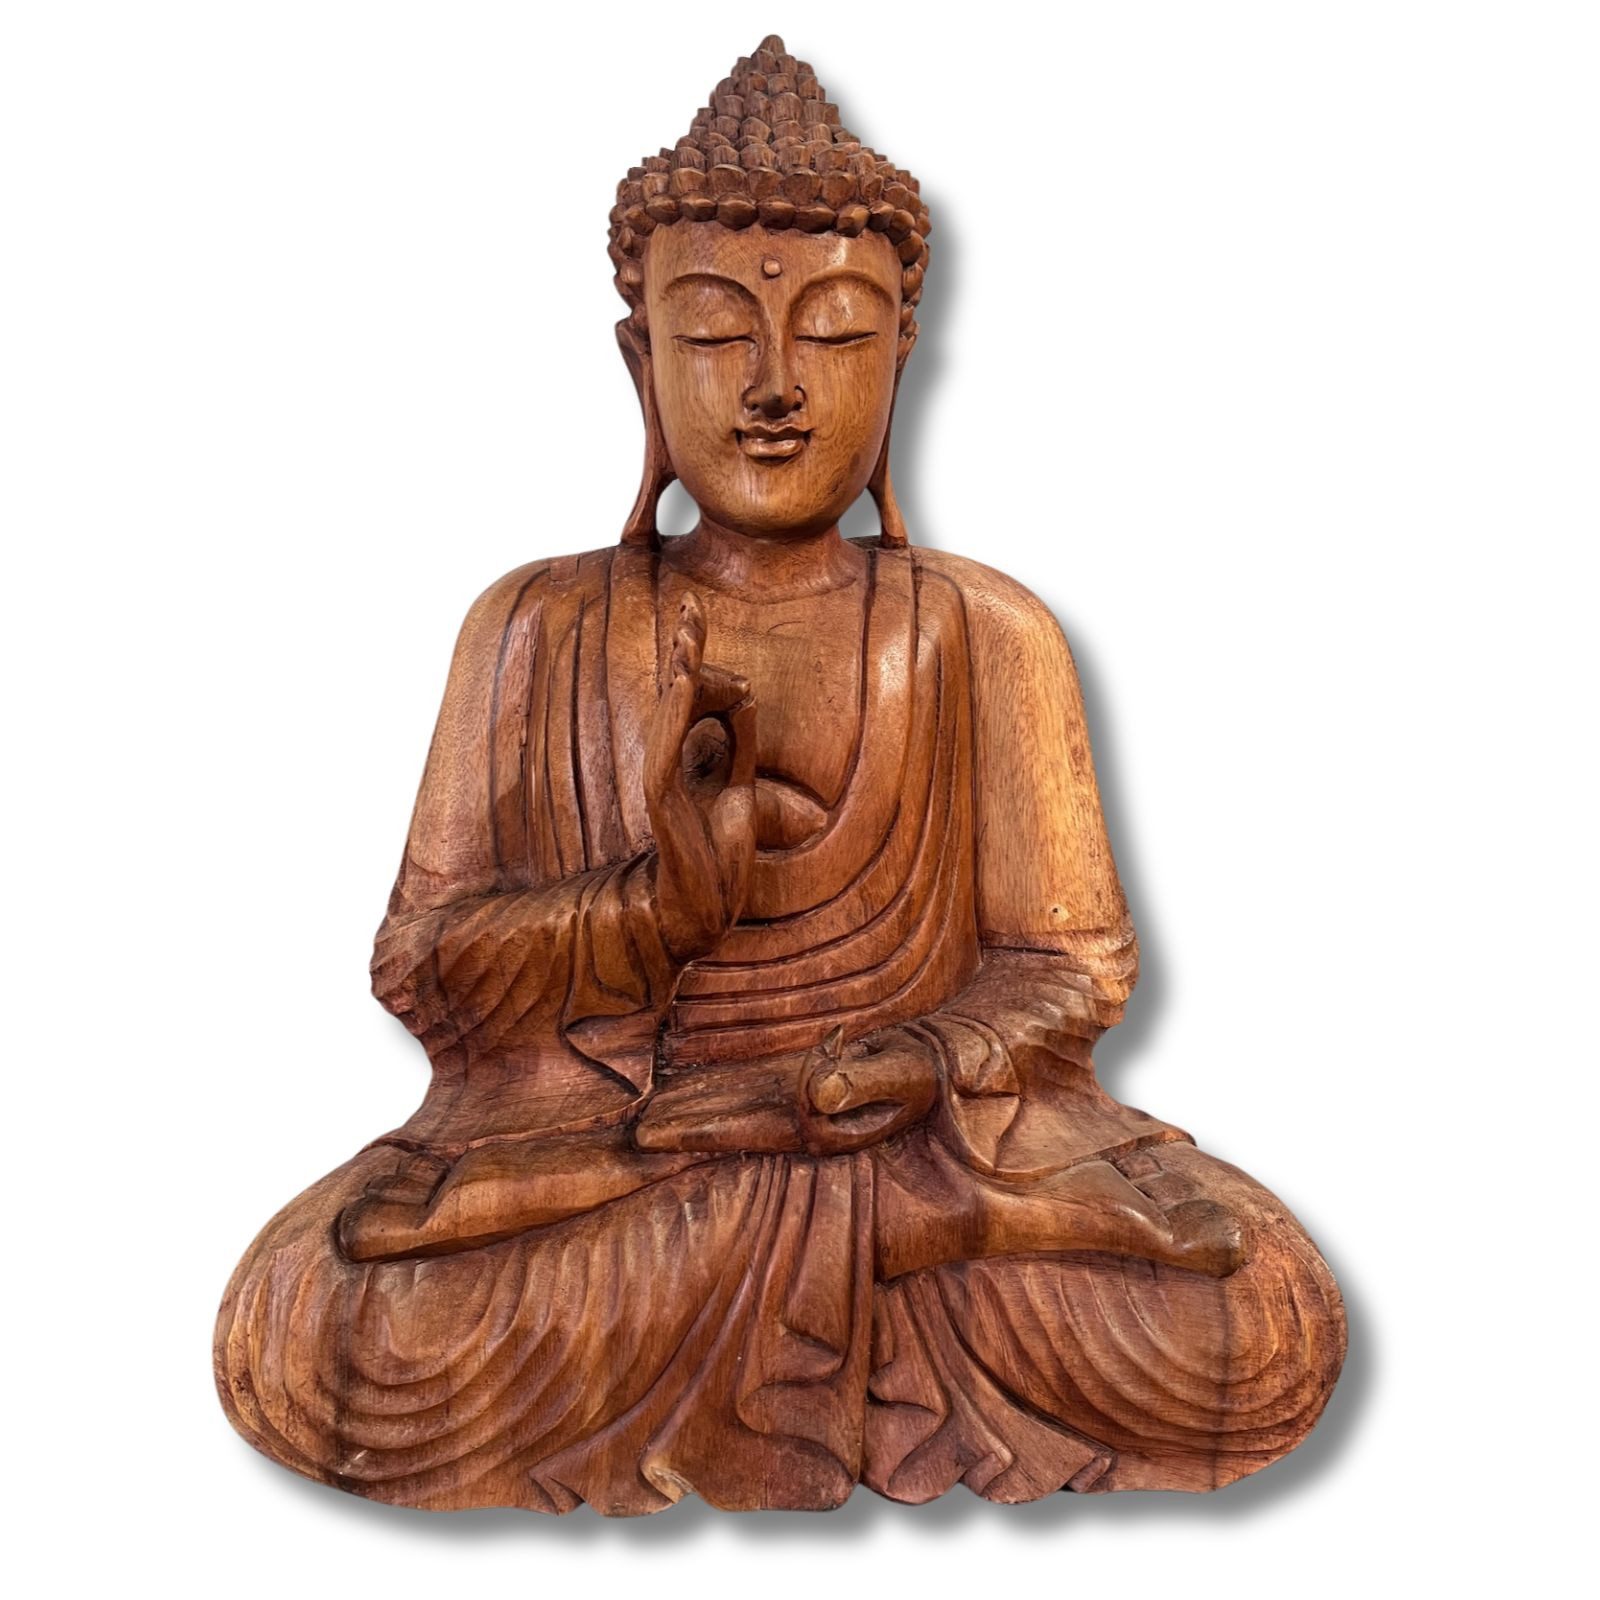 Asien LifeStyle Buddhafigur Holz Buddha Figur lehrende Geste 41cm groß